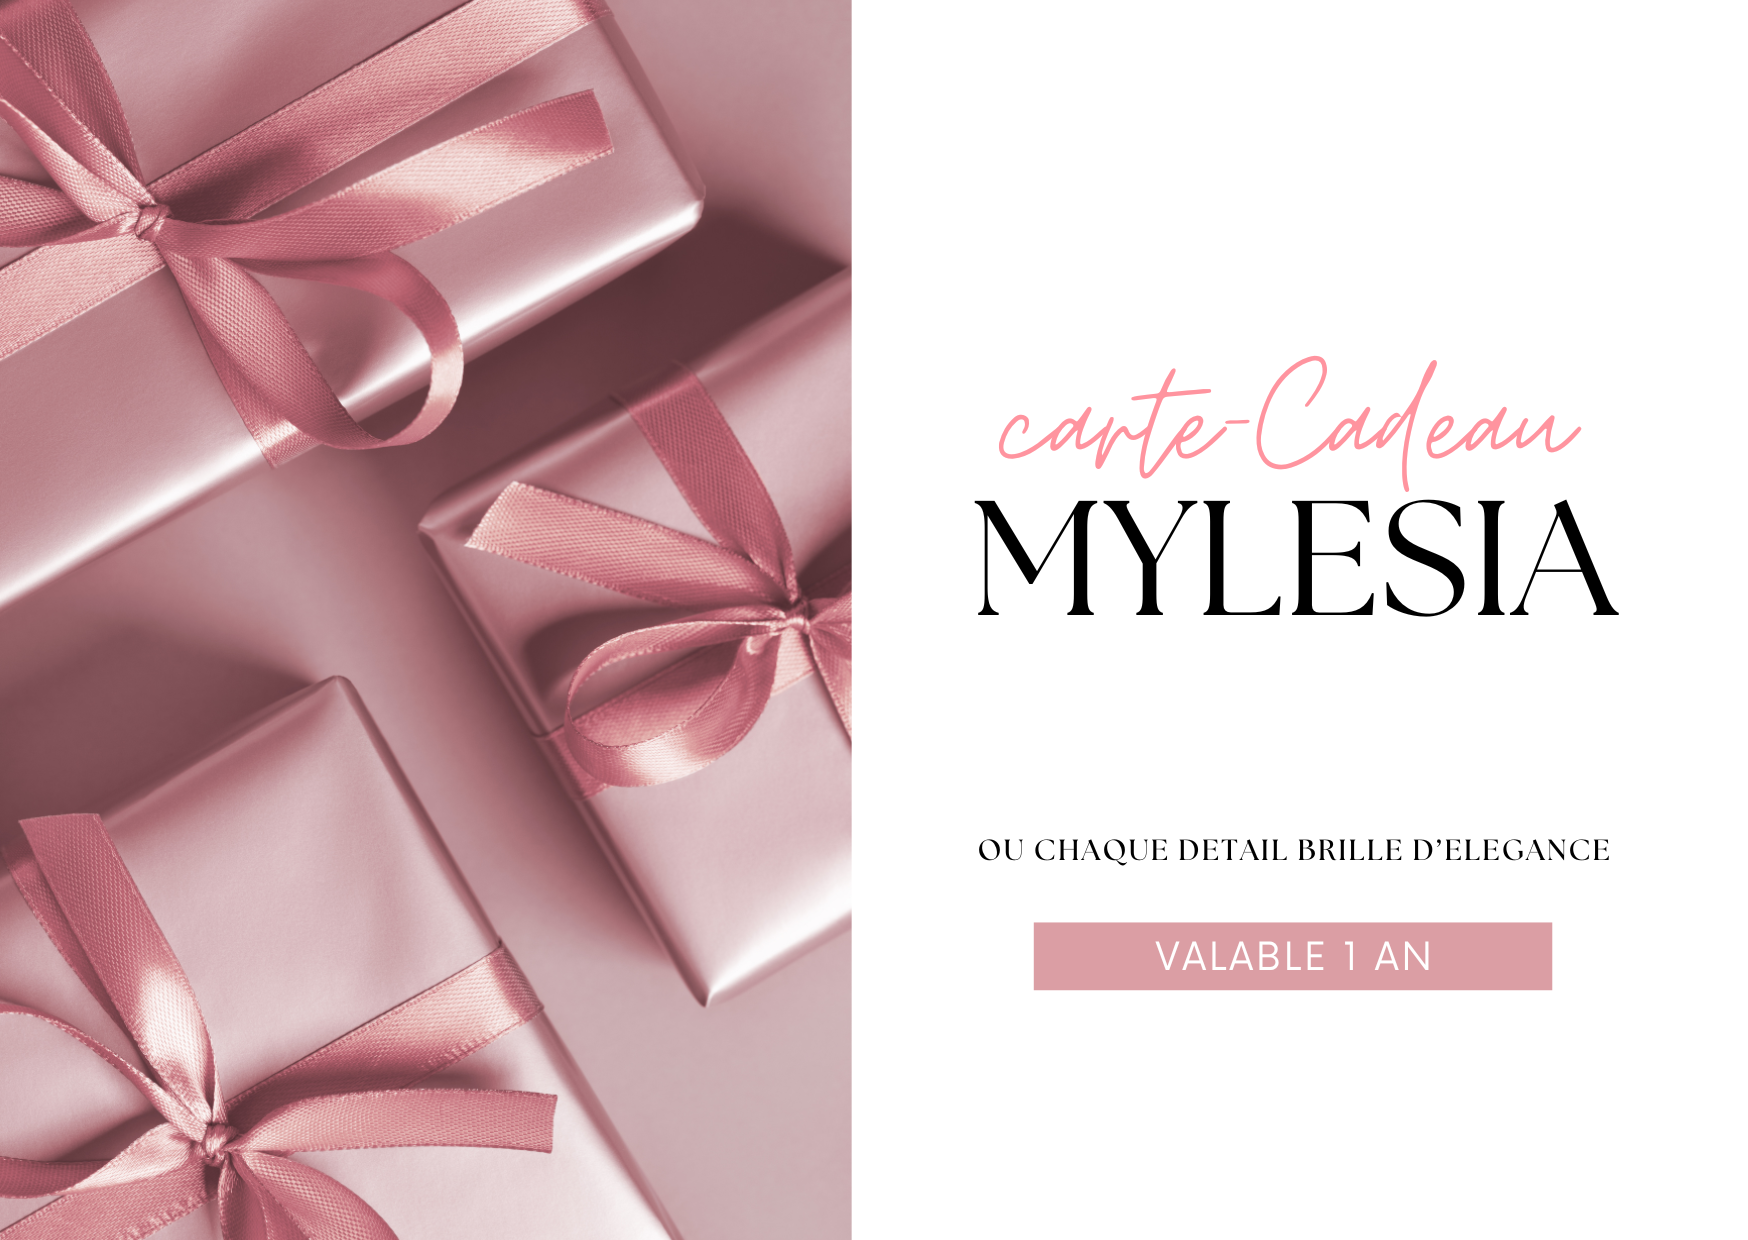 Carte-cadeau - MYLESIA